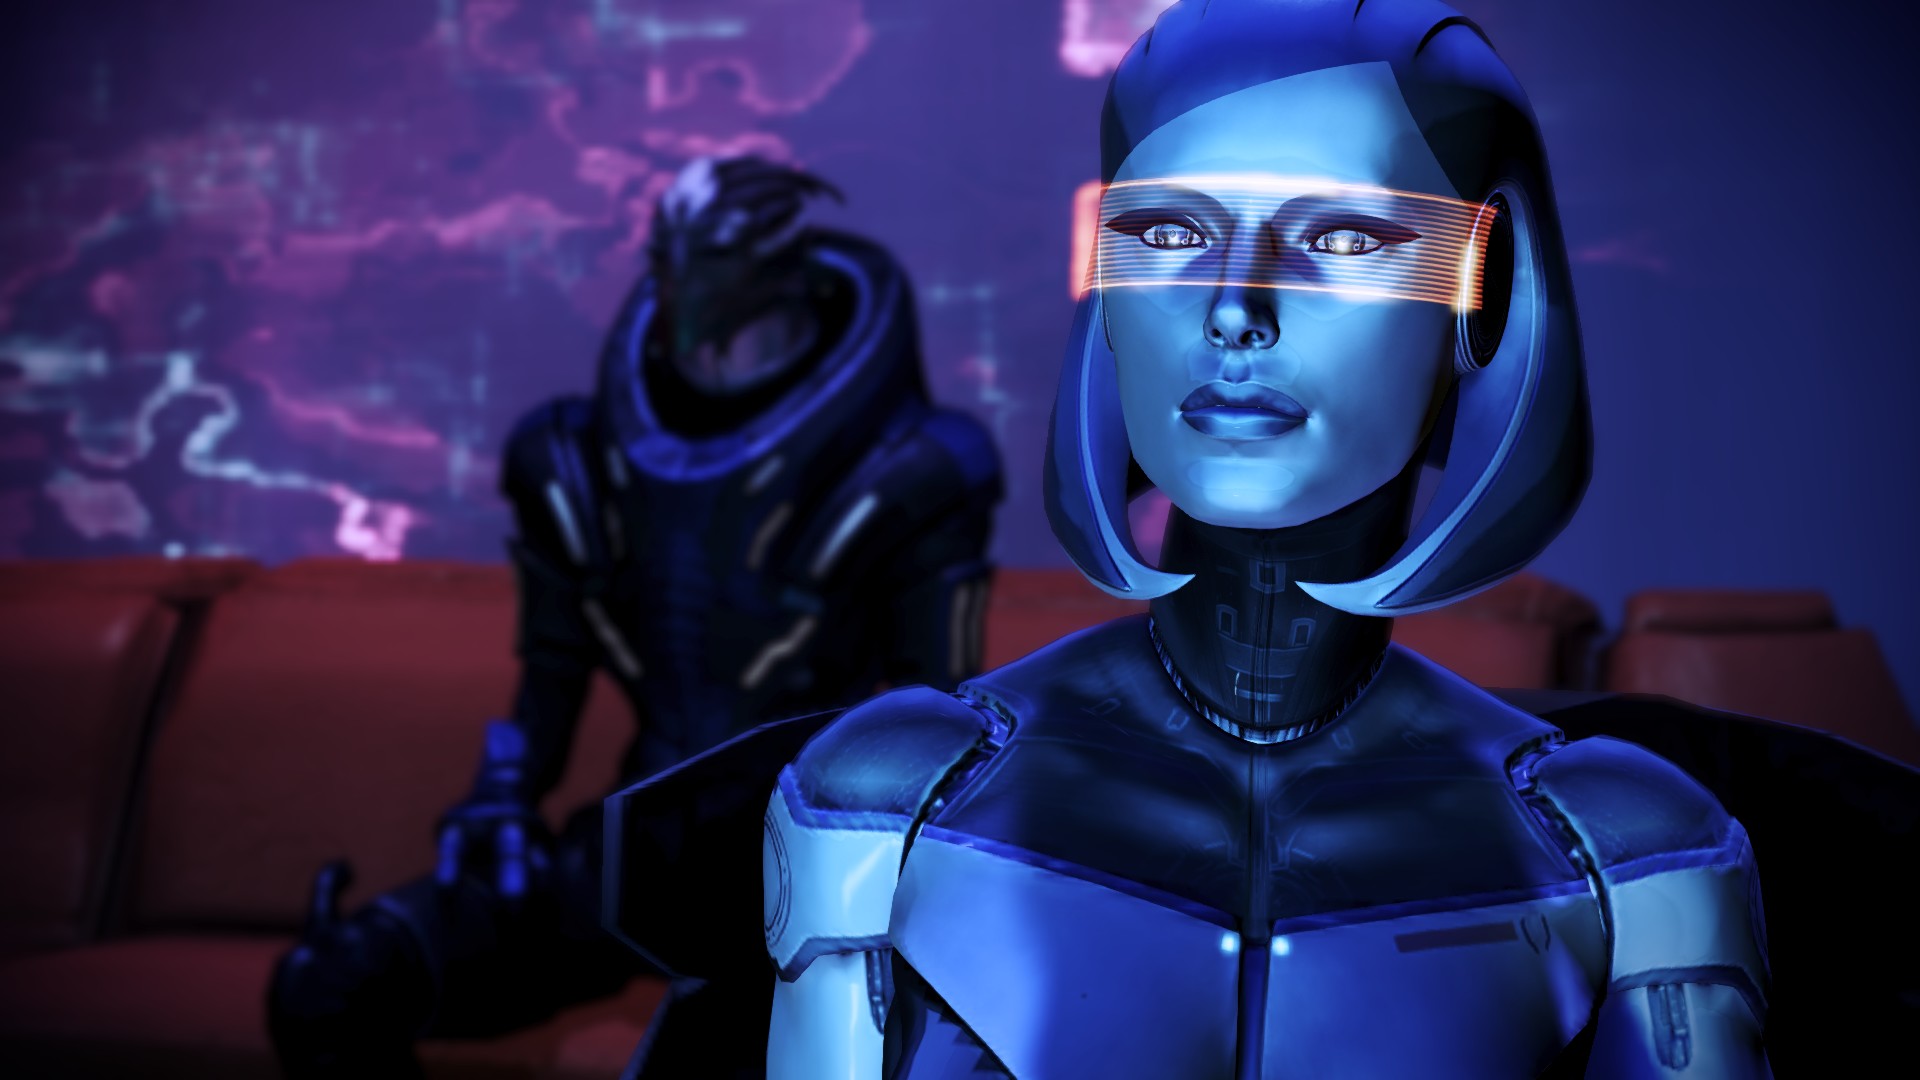 Wallpaper De Mass Effect Androm Et